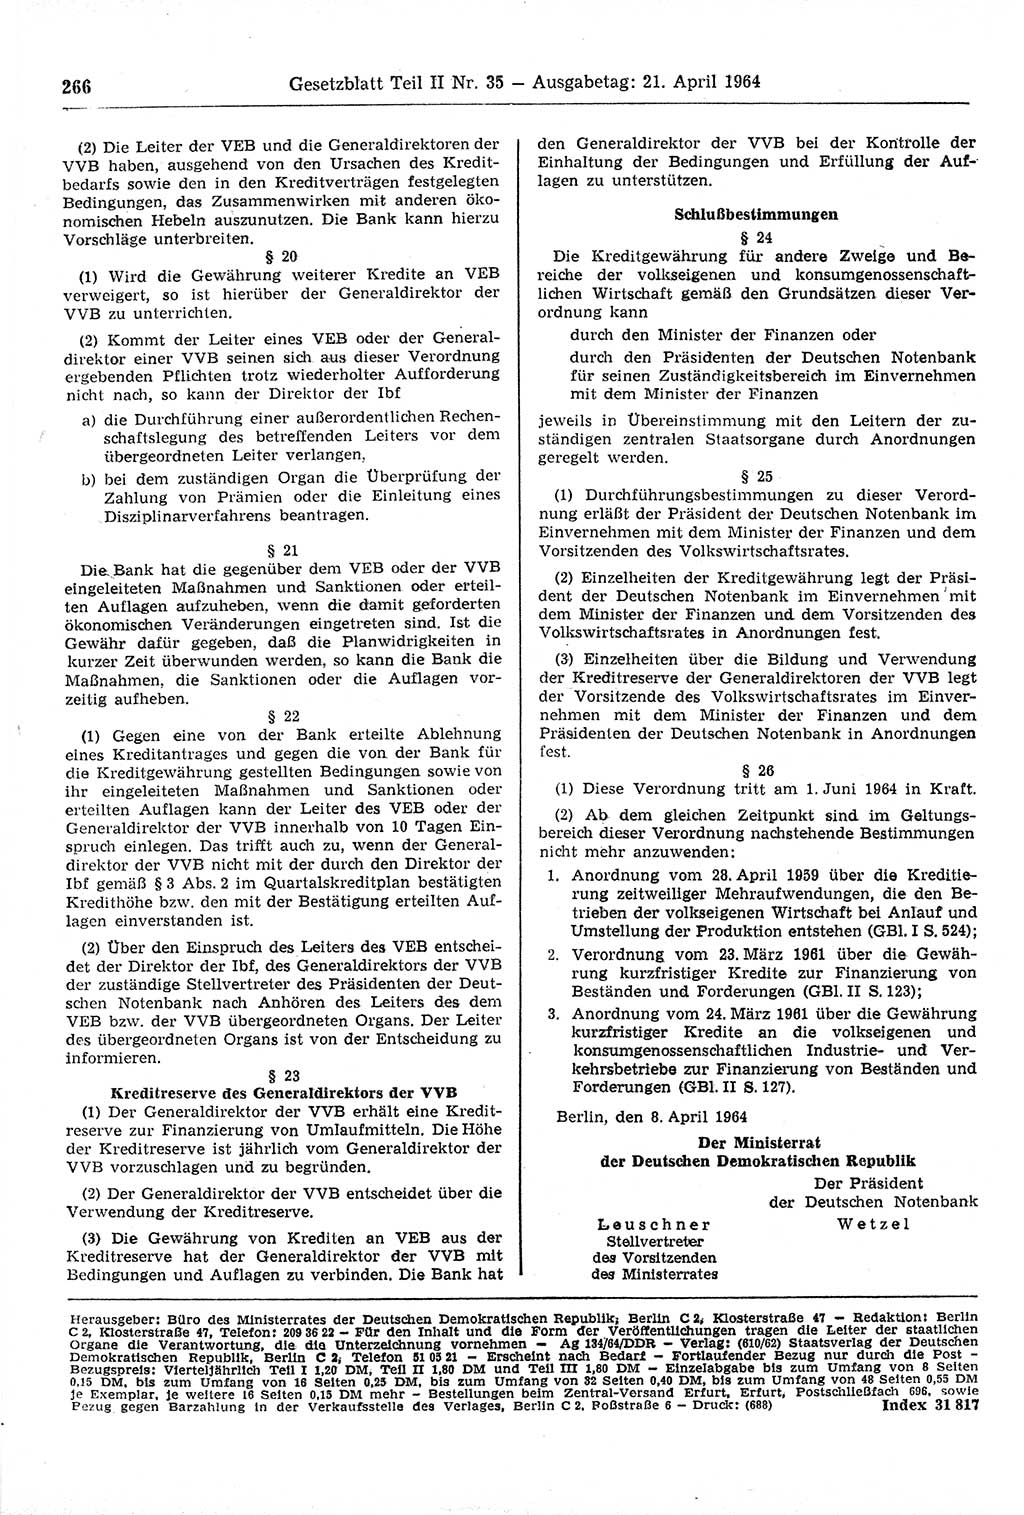 Gesetzblatt (GBl.) der Deutschen Demokratischen Republik (DDR) Teil ⅠⅠ 1964, Seite 266 (GBl. DDR ⅠⅠ 1964, S. 266)